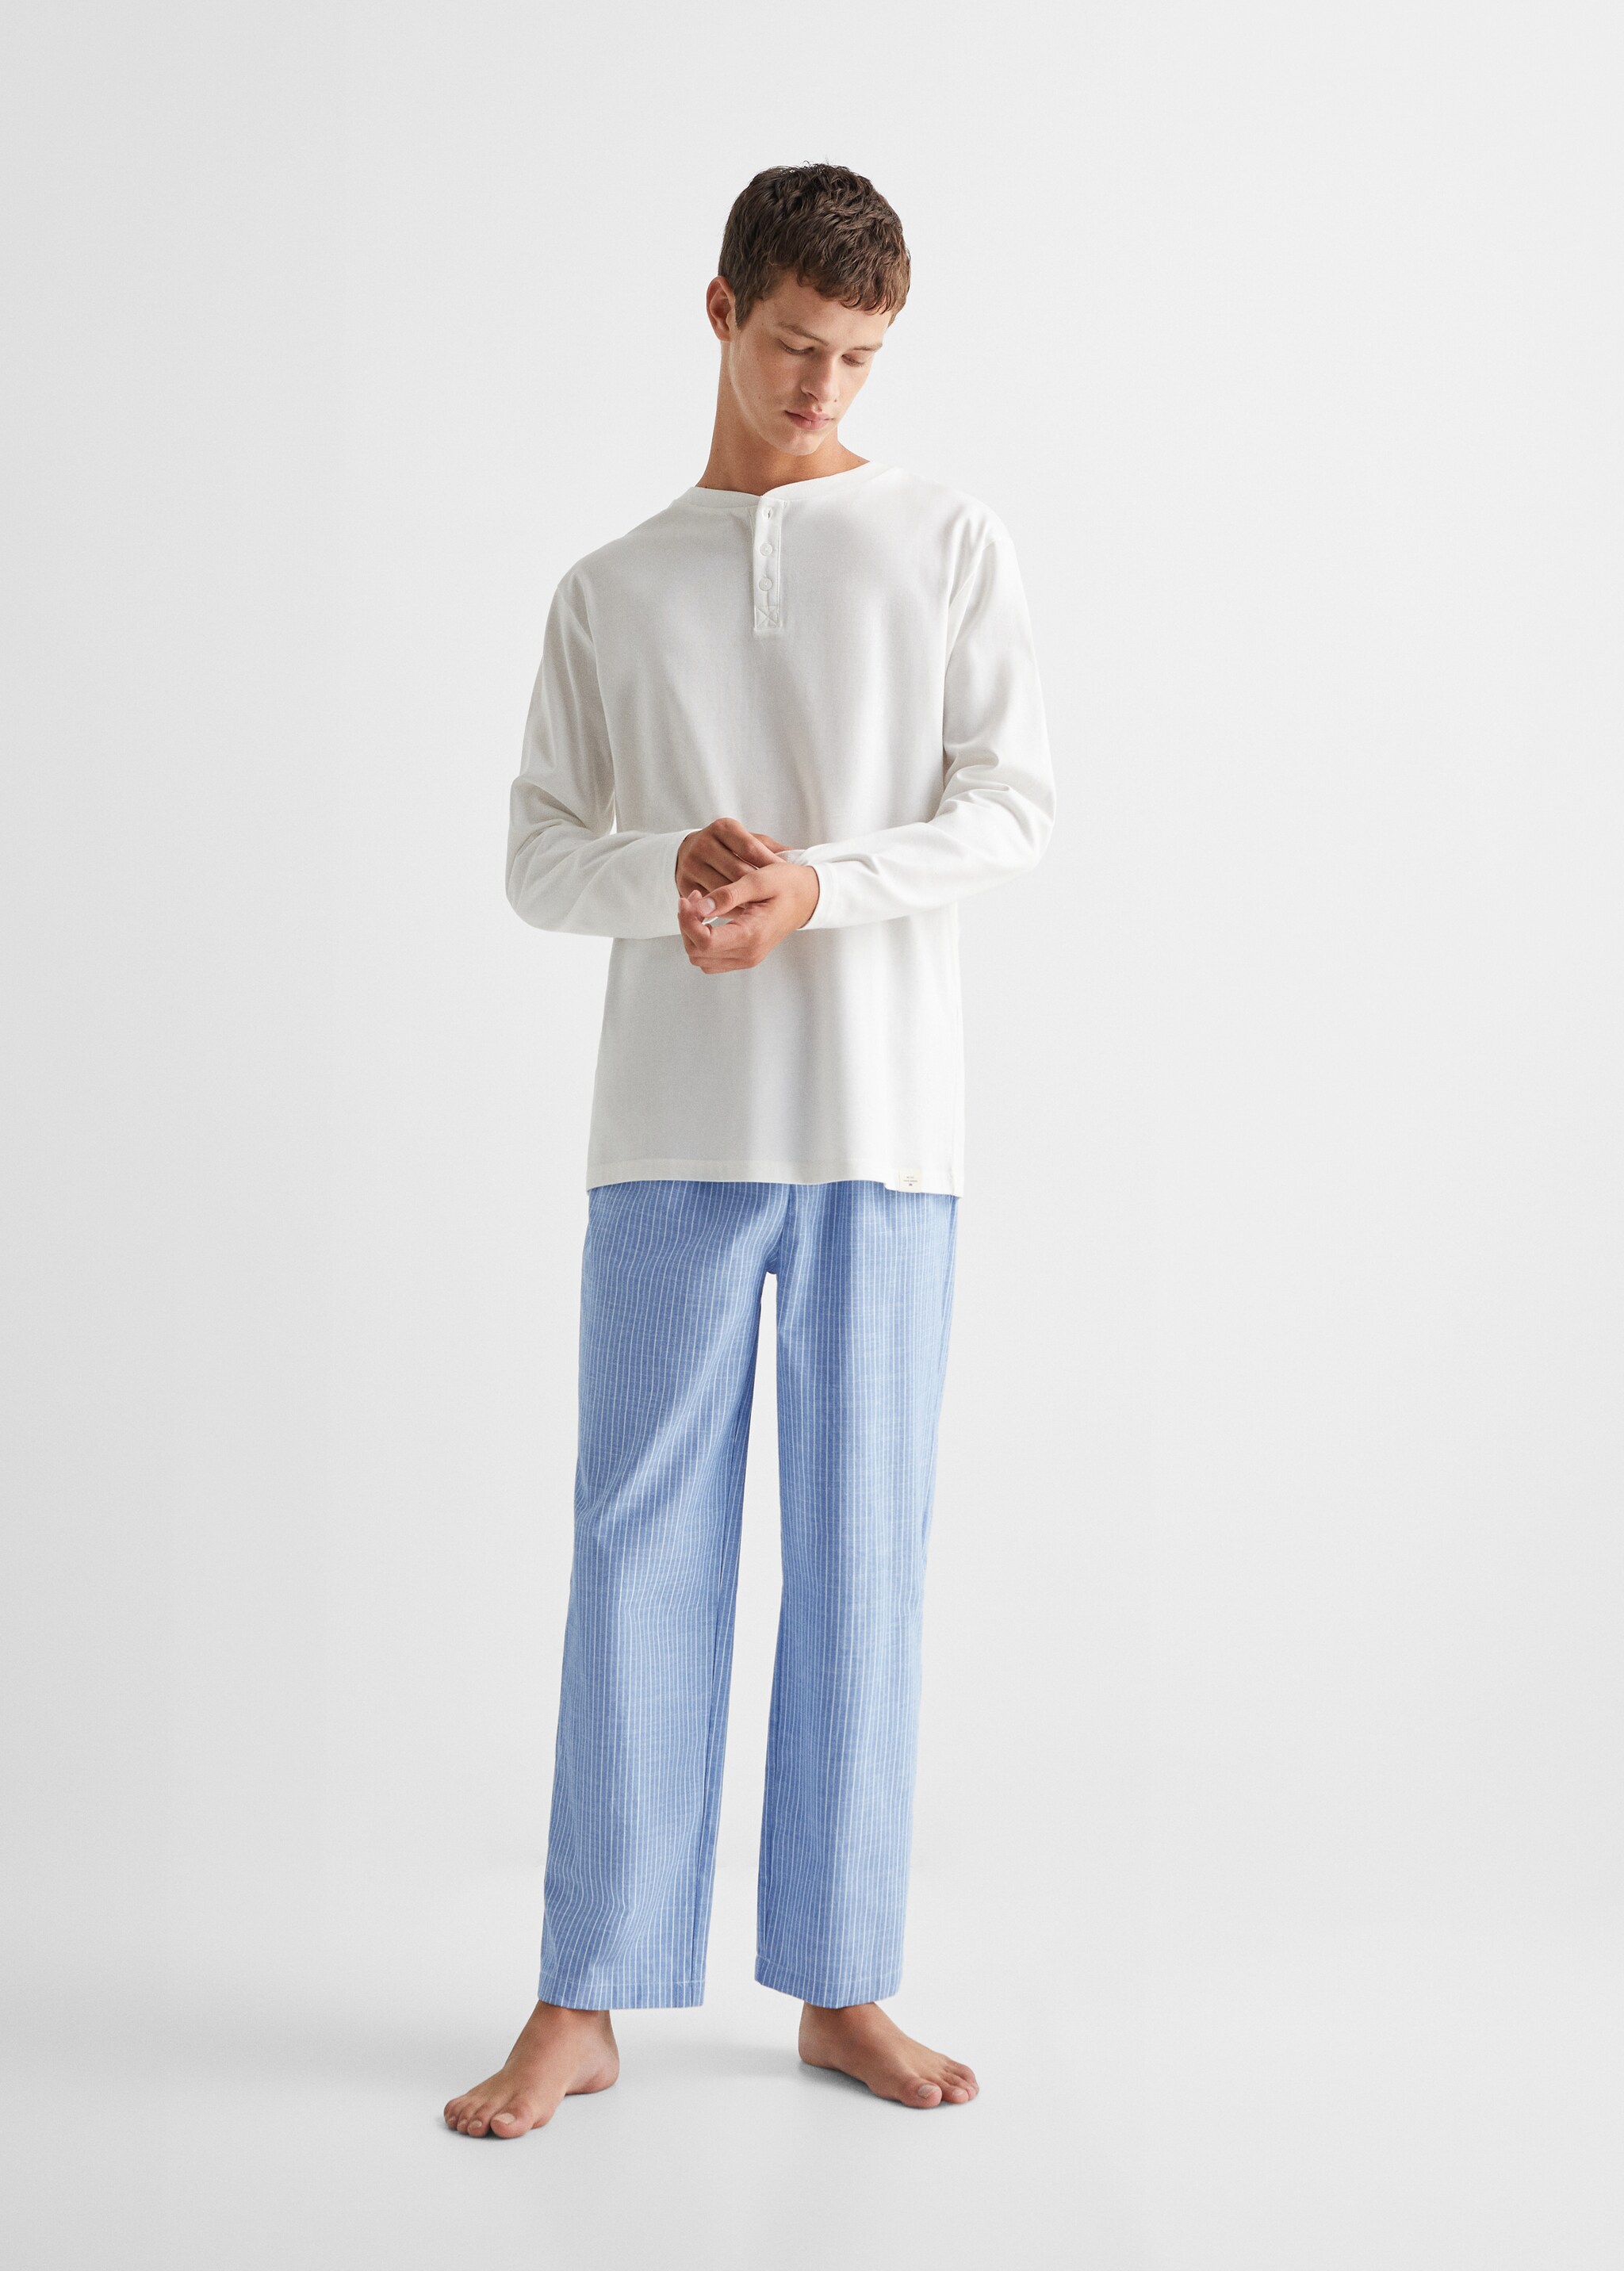 Пижама с брюками в полоску - Общий план